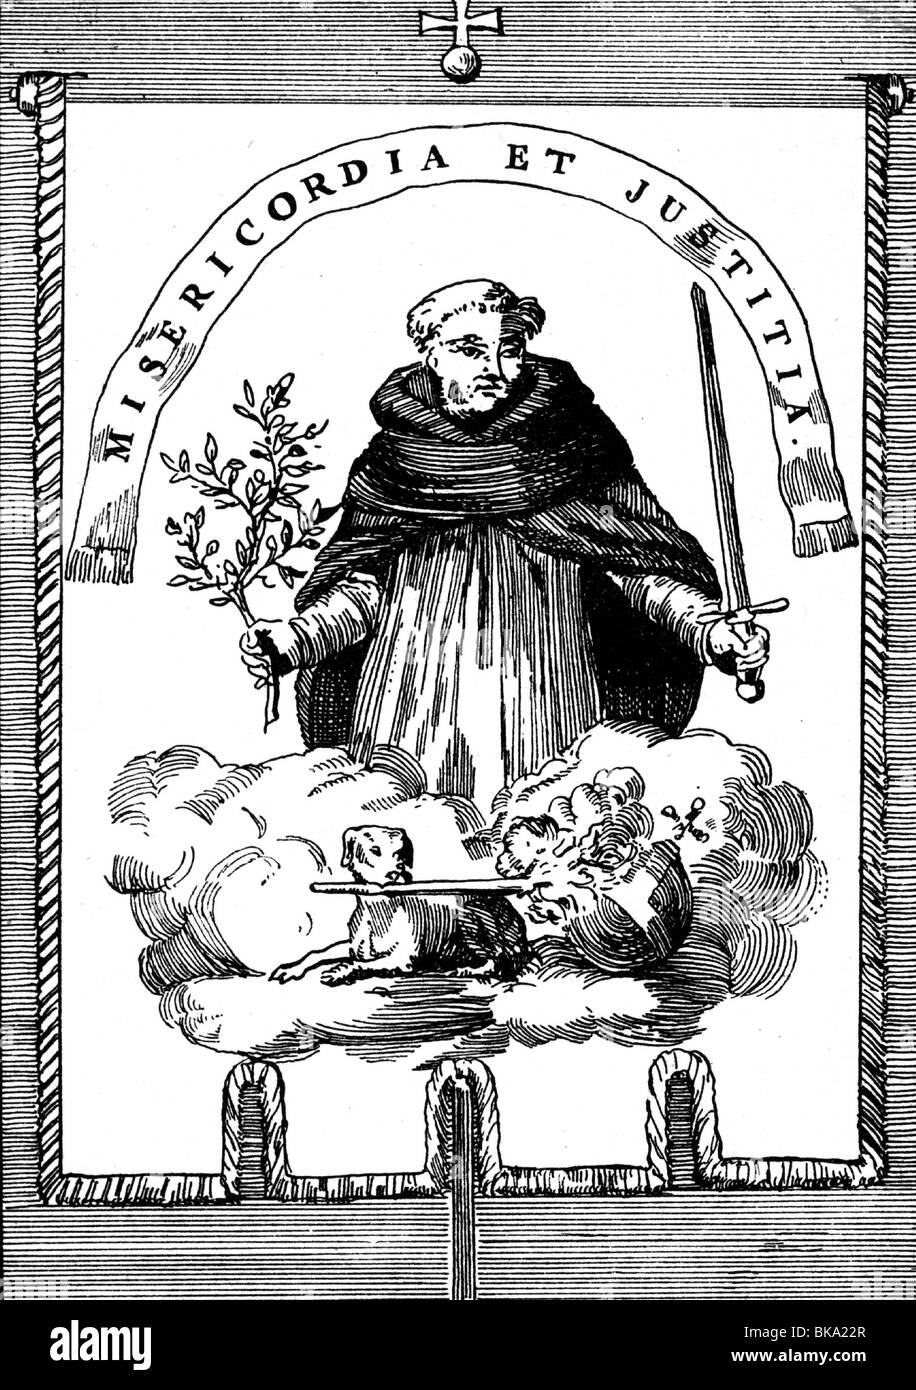 Magistratura, inquisizione, bandiera dell'inquisizione spagnola, circa 16th secolo, motto: "Gericordia et justitia", incisione del legno, 19th secolo, Foto Stock